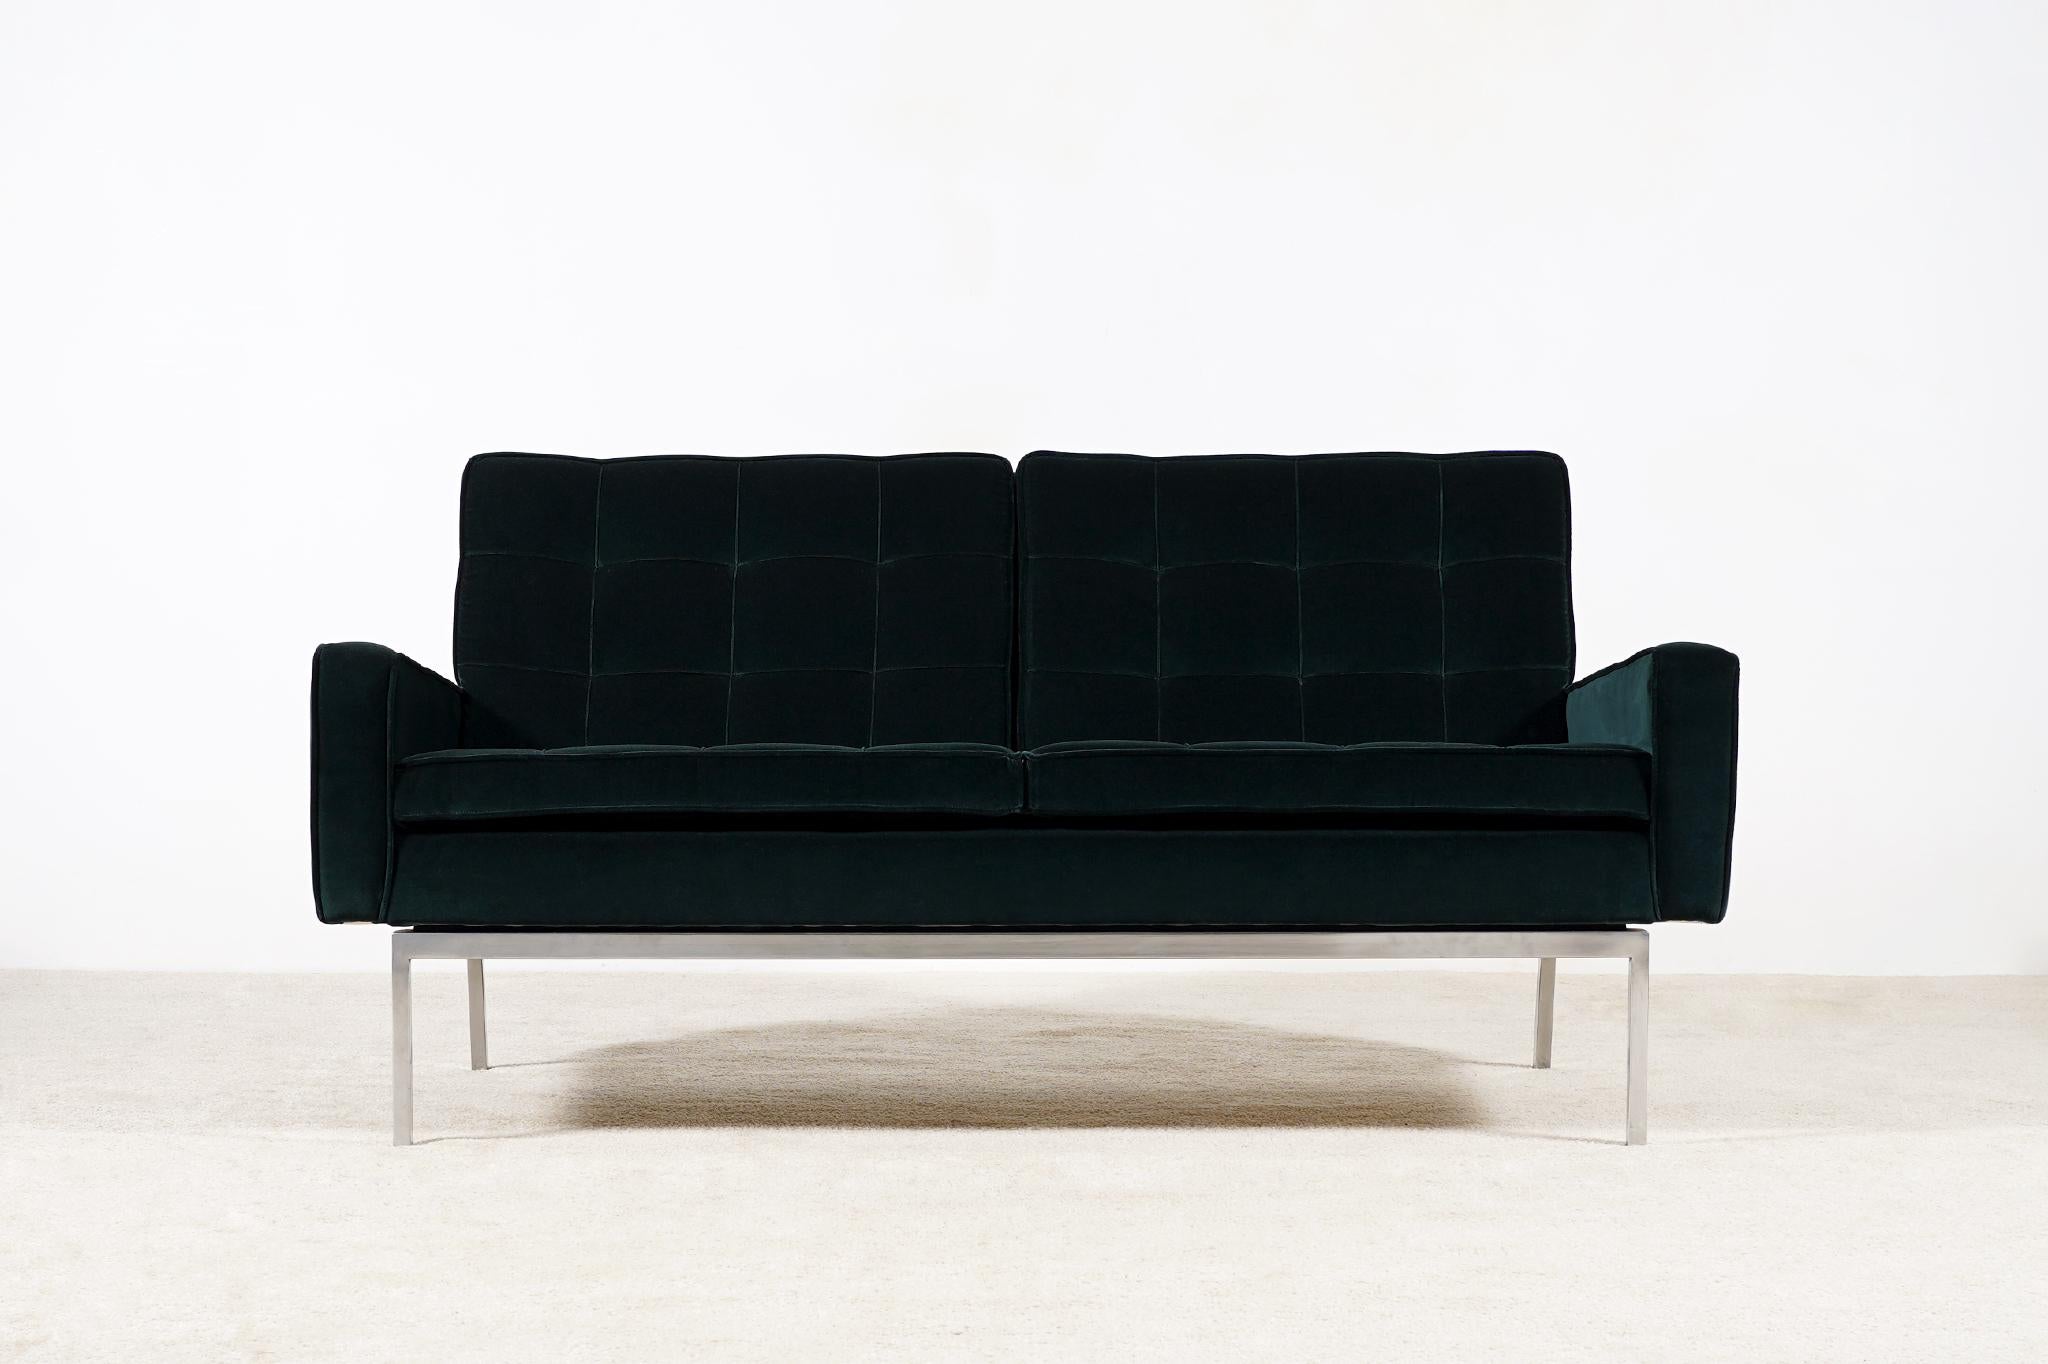 Canapé deux places modèle 66A conçu par Florence Knoll et produit par Knoll International, vers 1960.
Cette chaise n'a été fabriquée que de 1958 à 1975.
Nouvellement retapissé avec un velours vert foncé de la collection Kvadrat Raf Simons.
Base